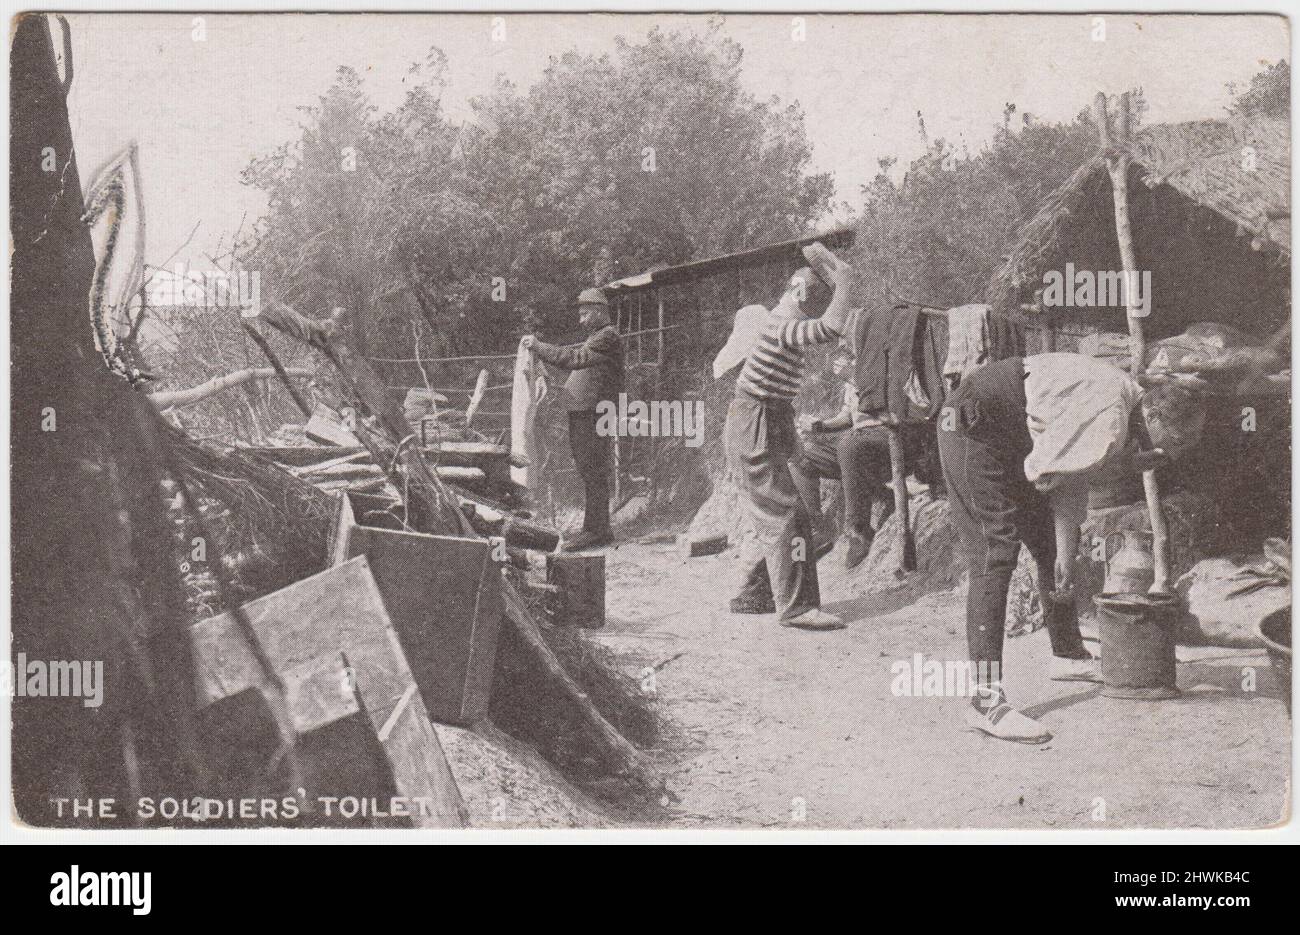 « Les toilettes des soldats » : les soldats français de la première Guerre mondiale se lavant près de la ligne de front. L'image est l'une des photographies officielles de la Section photographique de l'Armée française, publiée par Newspaper illustrations Ltd. Au Royaume-Uni Banque D'Images